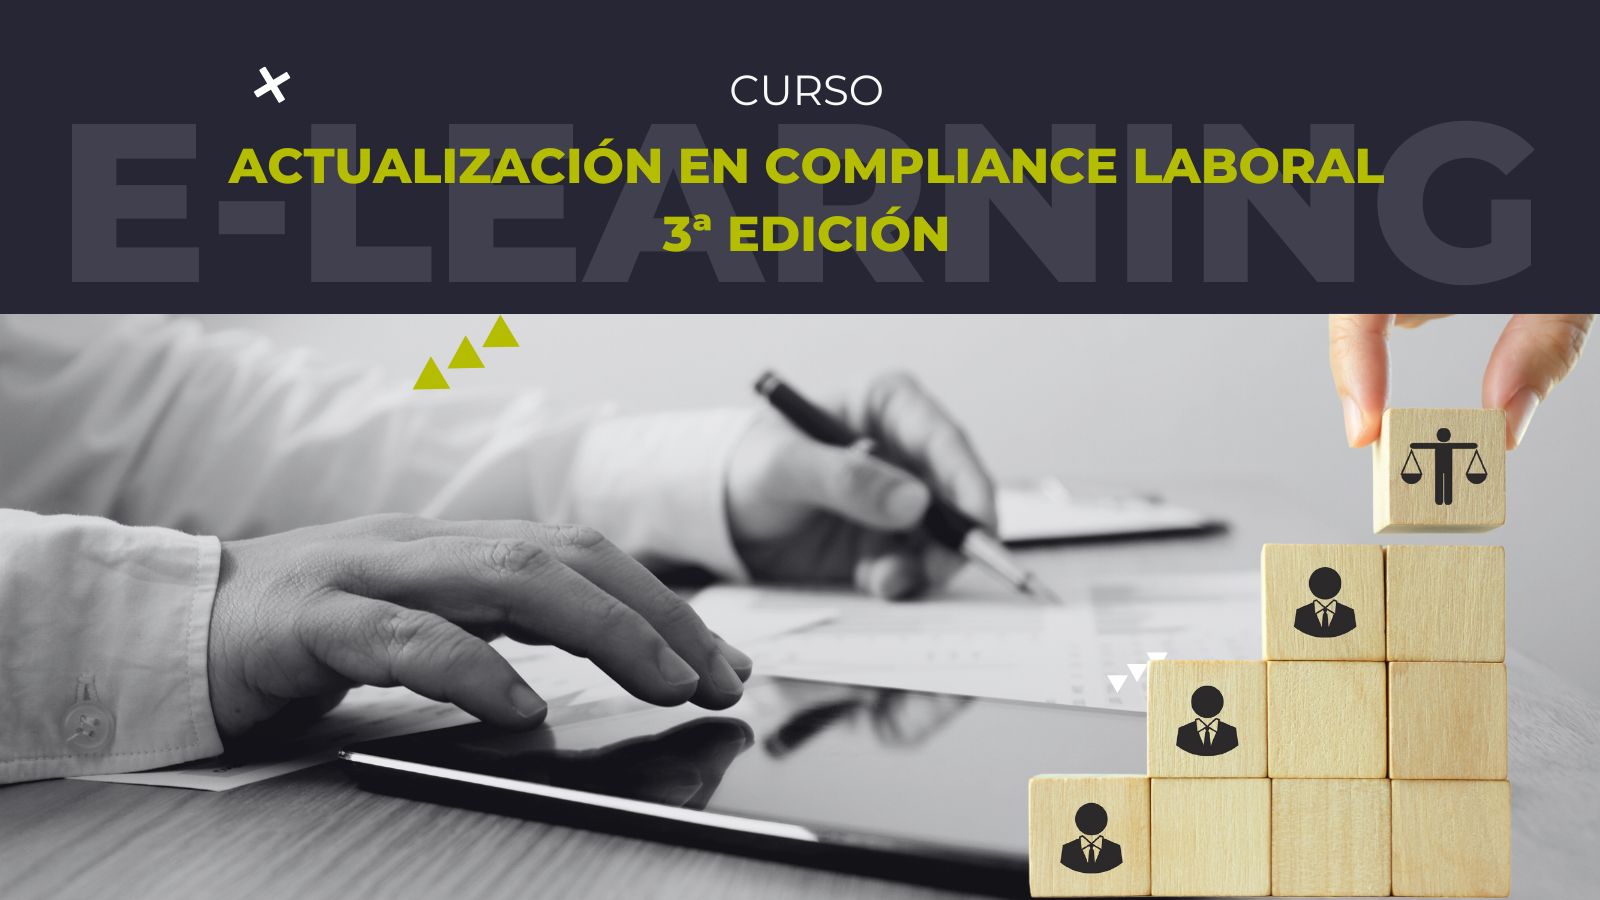 El curso Actualización en Compliance Laboral lanza su 3ª edición